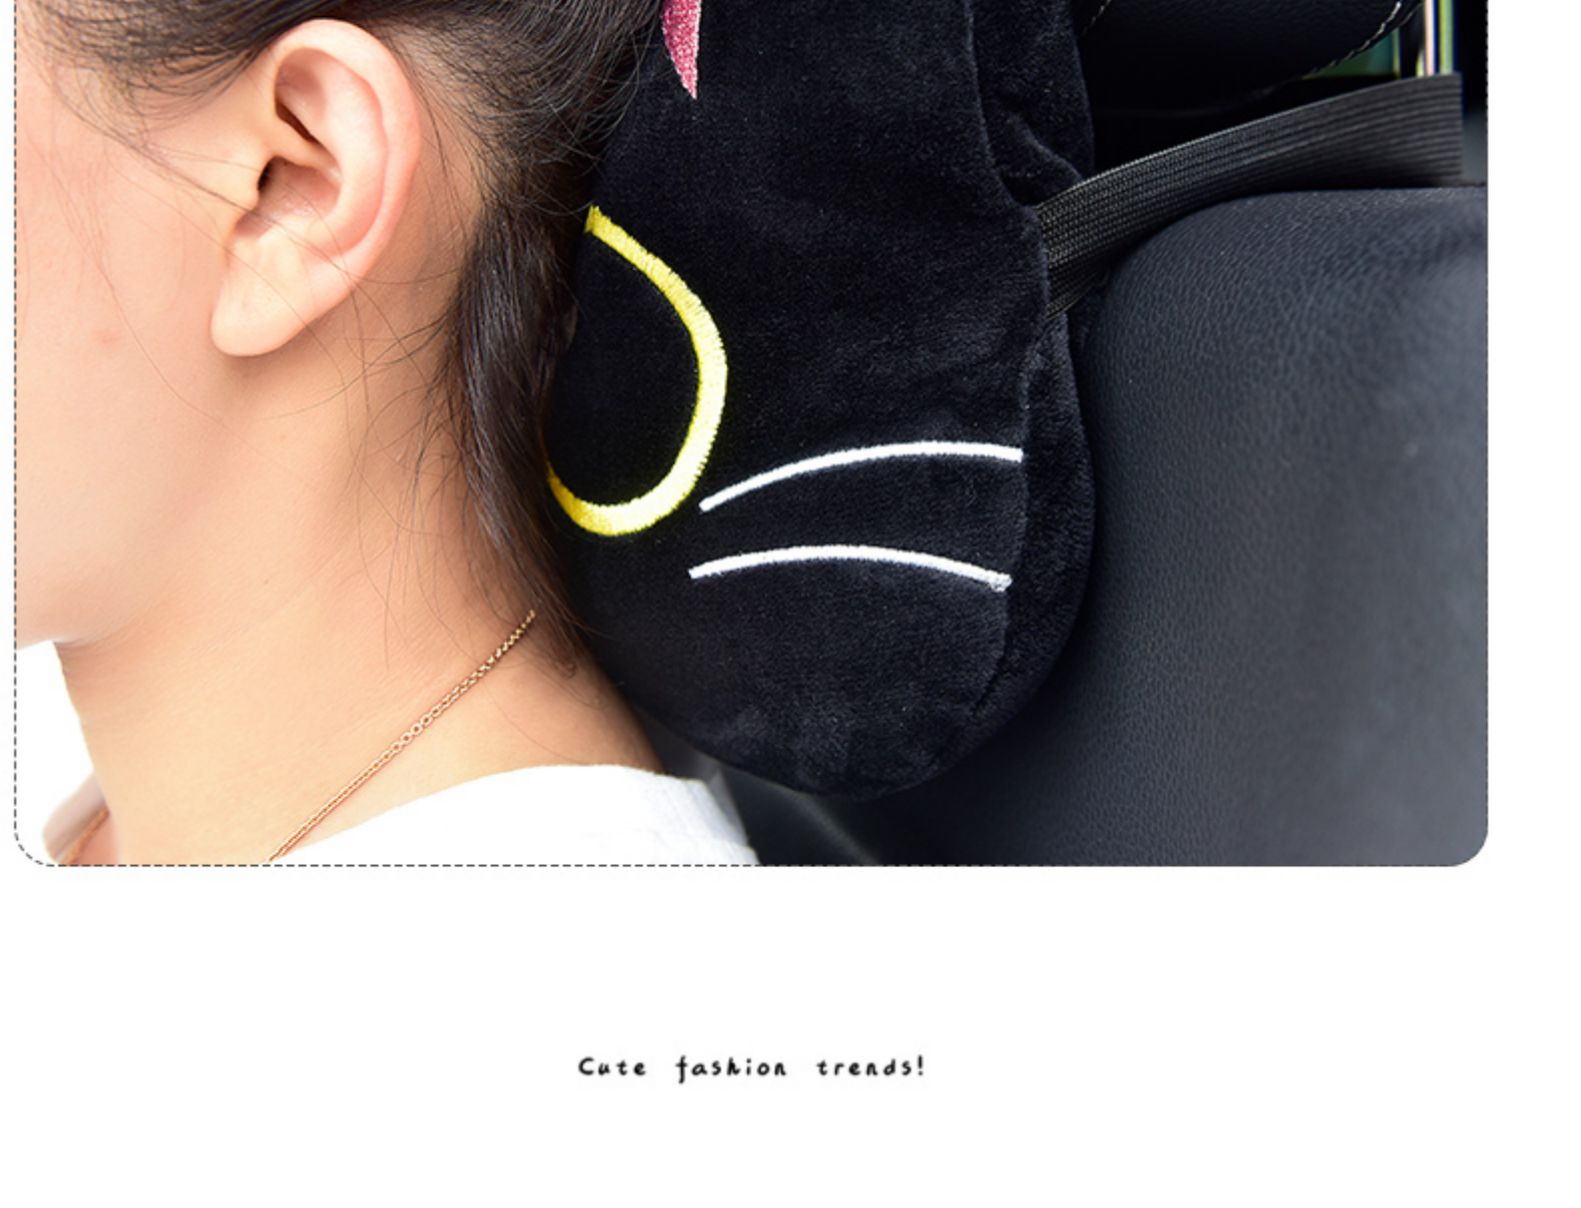 Cute Cat Car Accessories- Neck Pillow - Loli The Cat